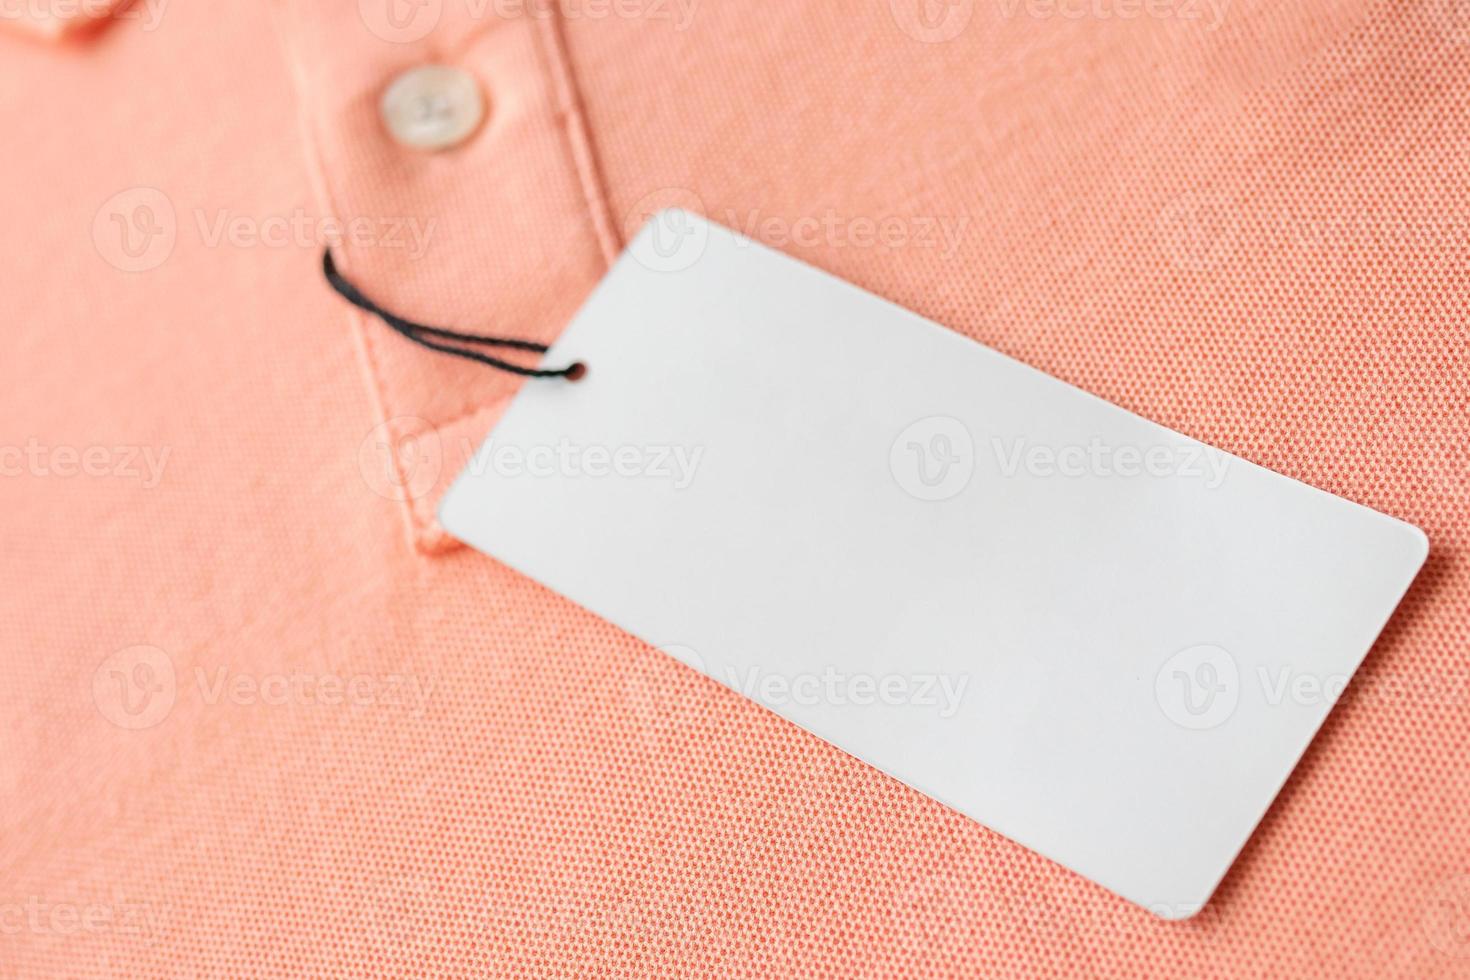 etiqueta de etiqueta de roupas brancas em branco no fundo de textura de tecido rosa foto